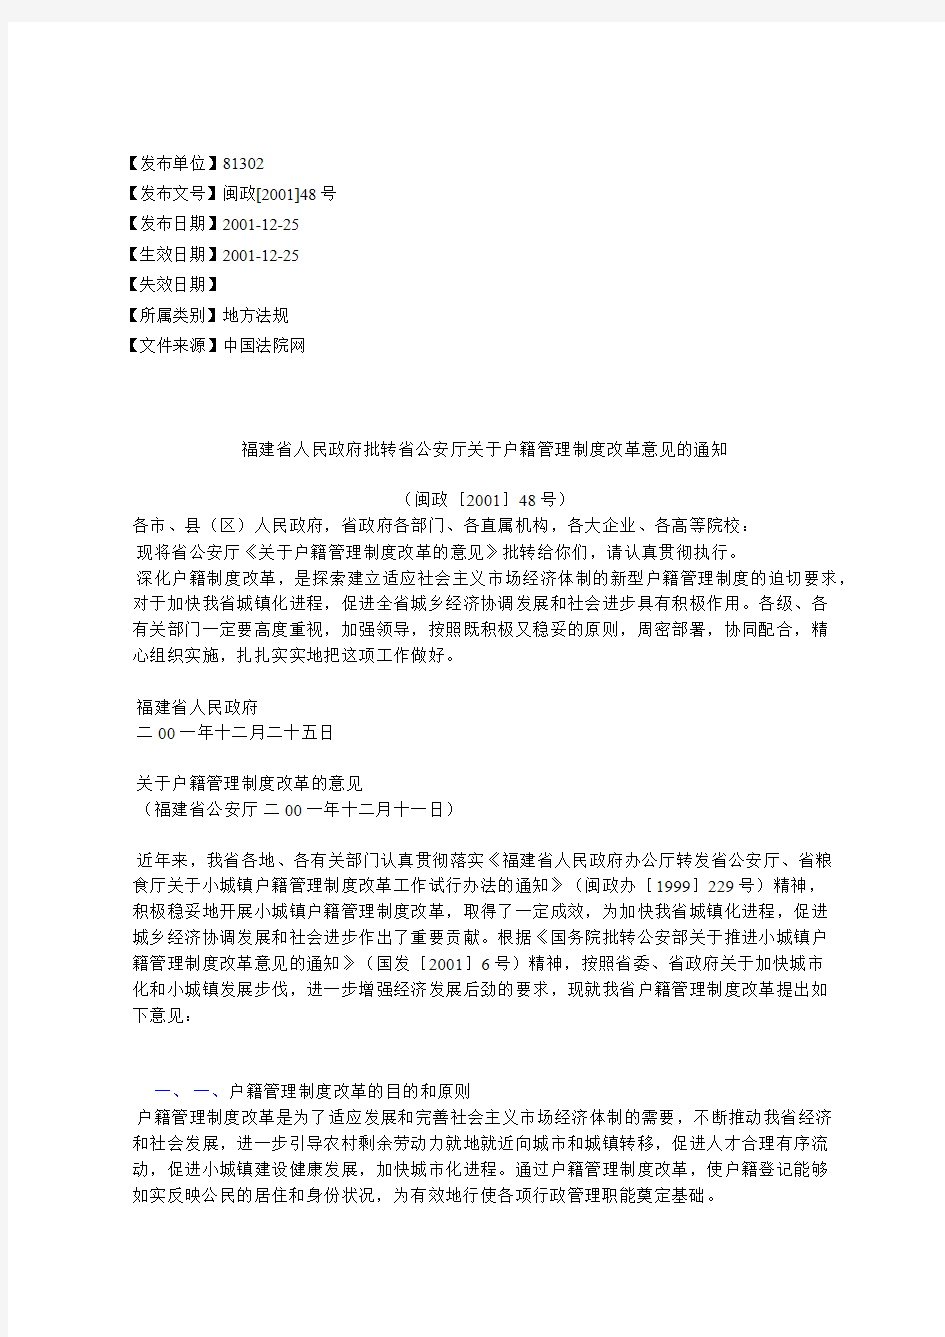 福建省人民政府批转省公安厅关于户籍管理制度改革意见的通知